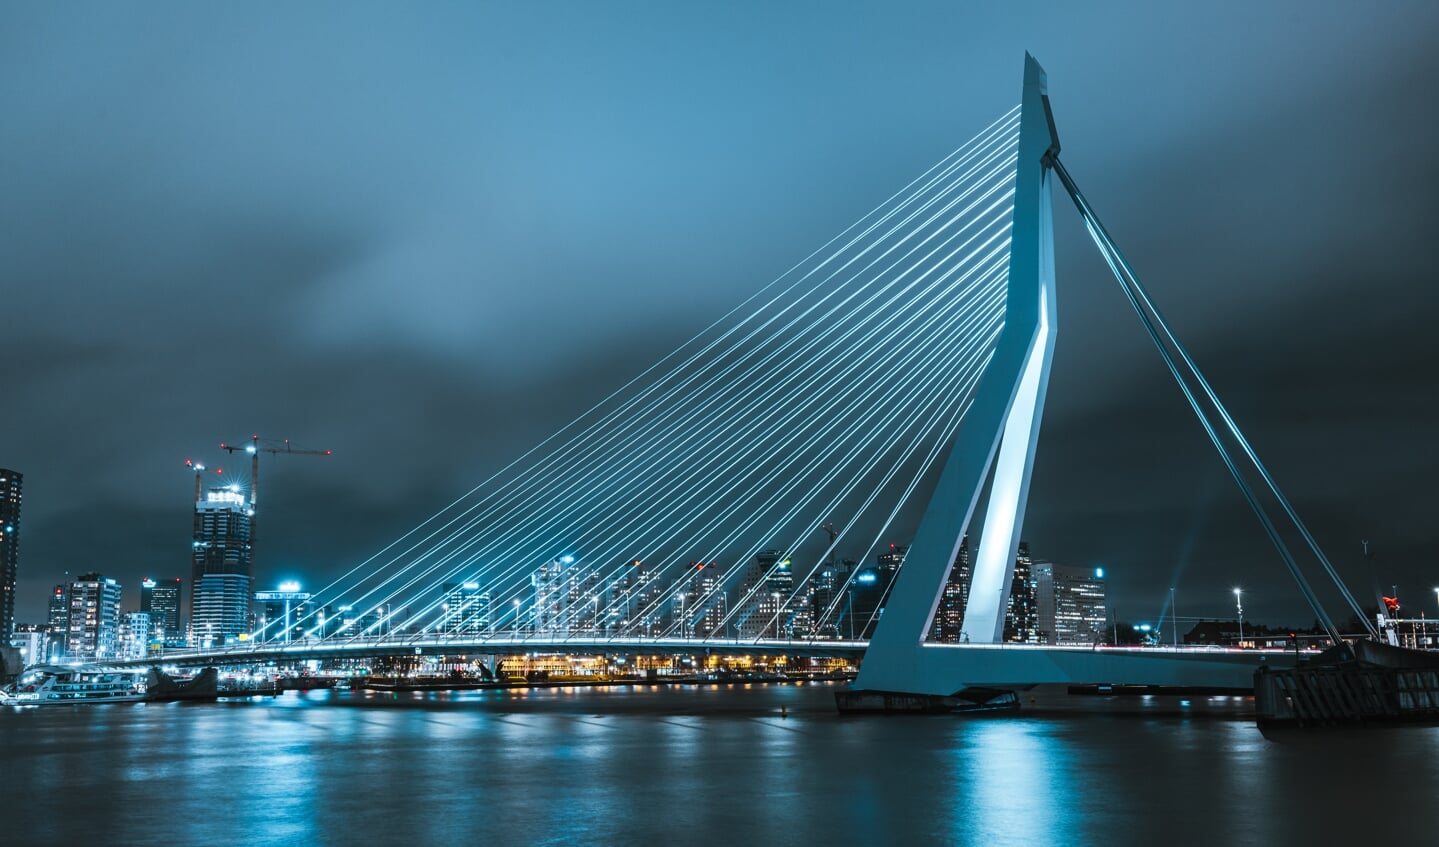 Bezoek de Erasmusbrug en Rotterdam verantwoord dankzij een sneltest